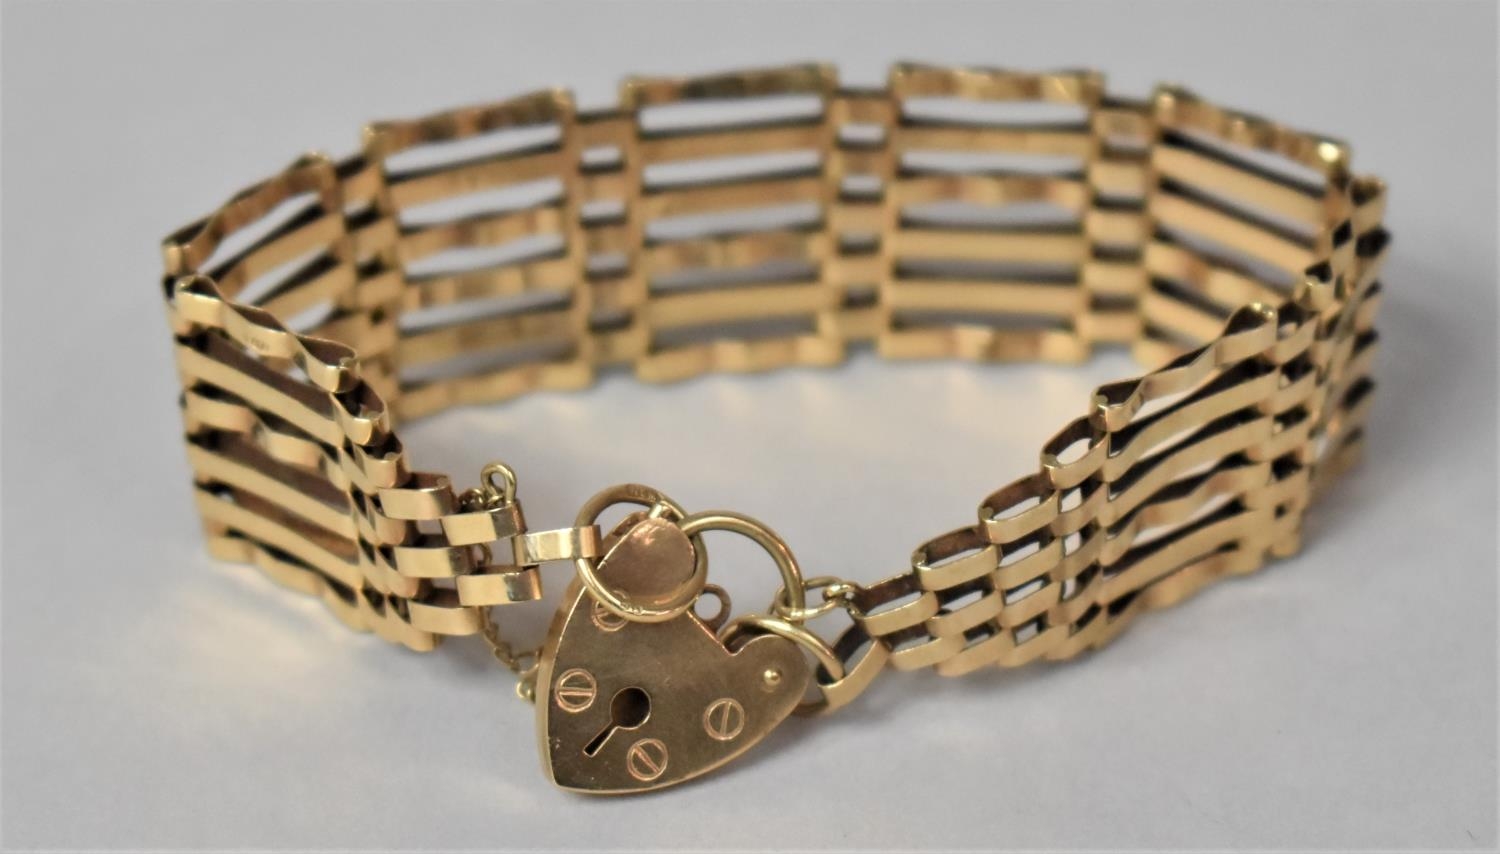 A 9ct Gold Gate Link Bracelet, 13.4gms, London Hallmark - Image 2 of 3